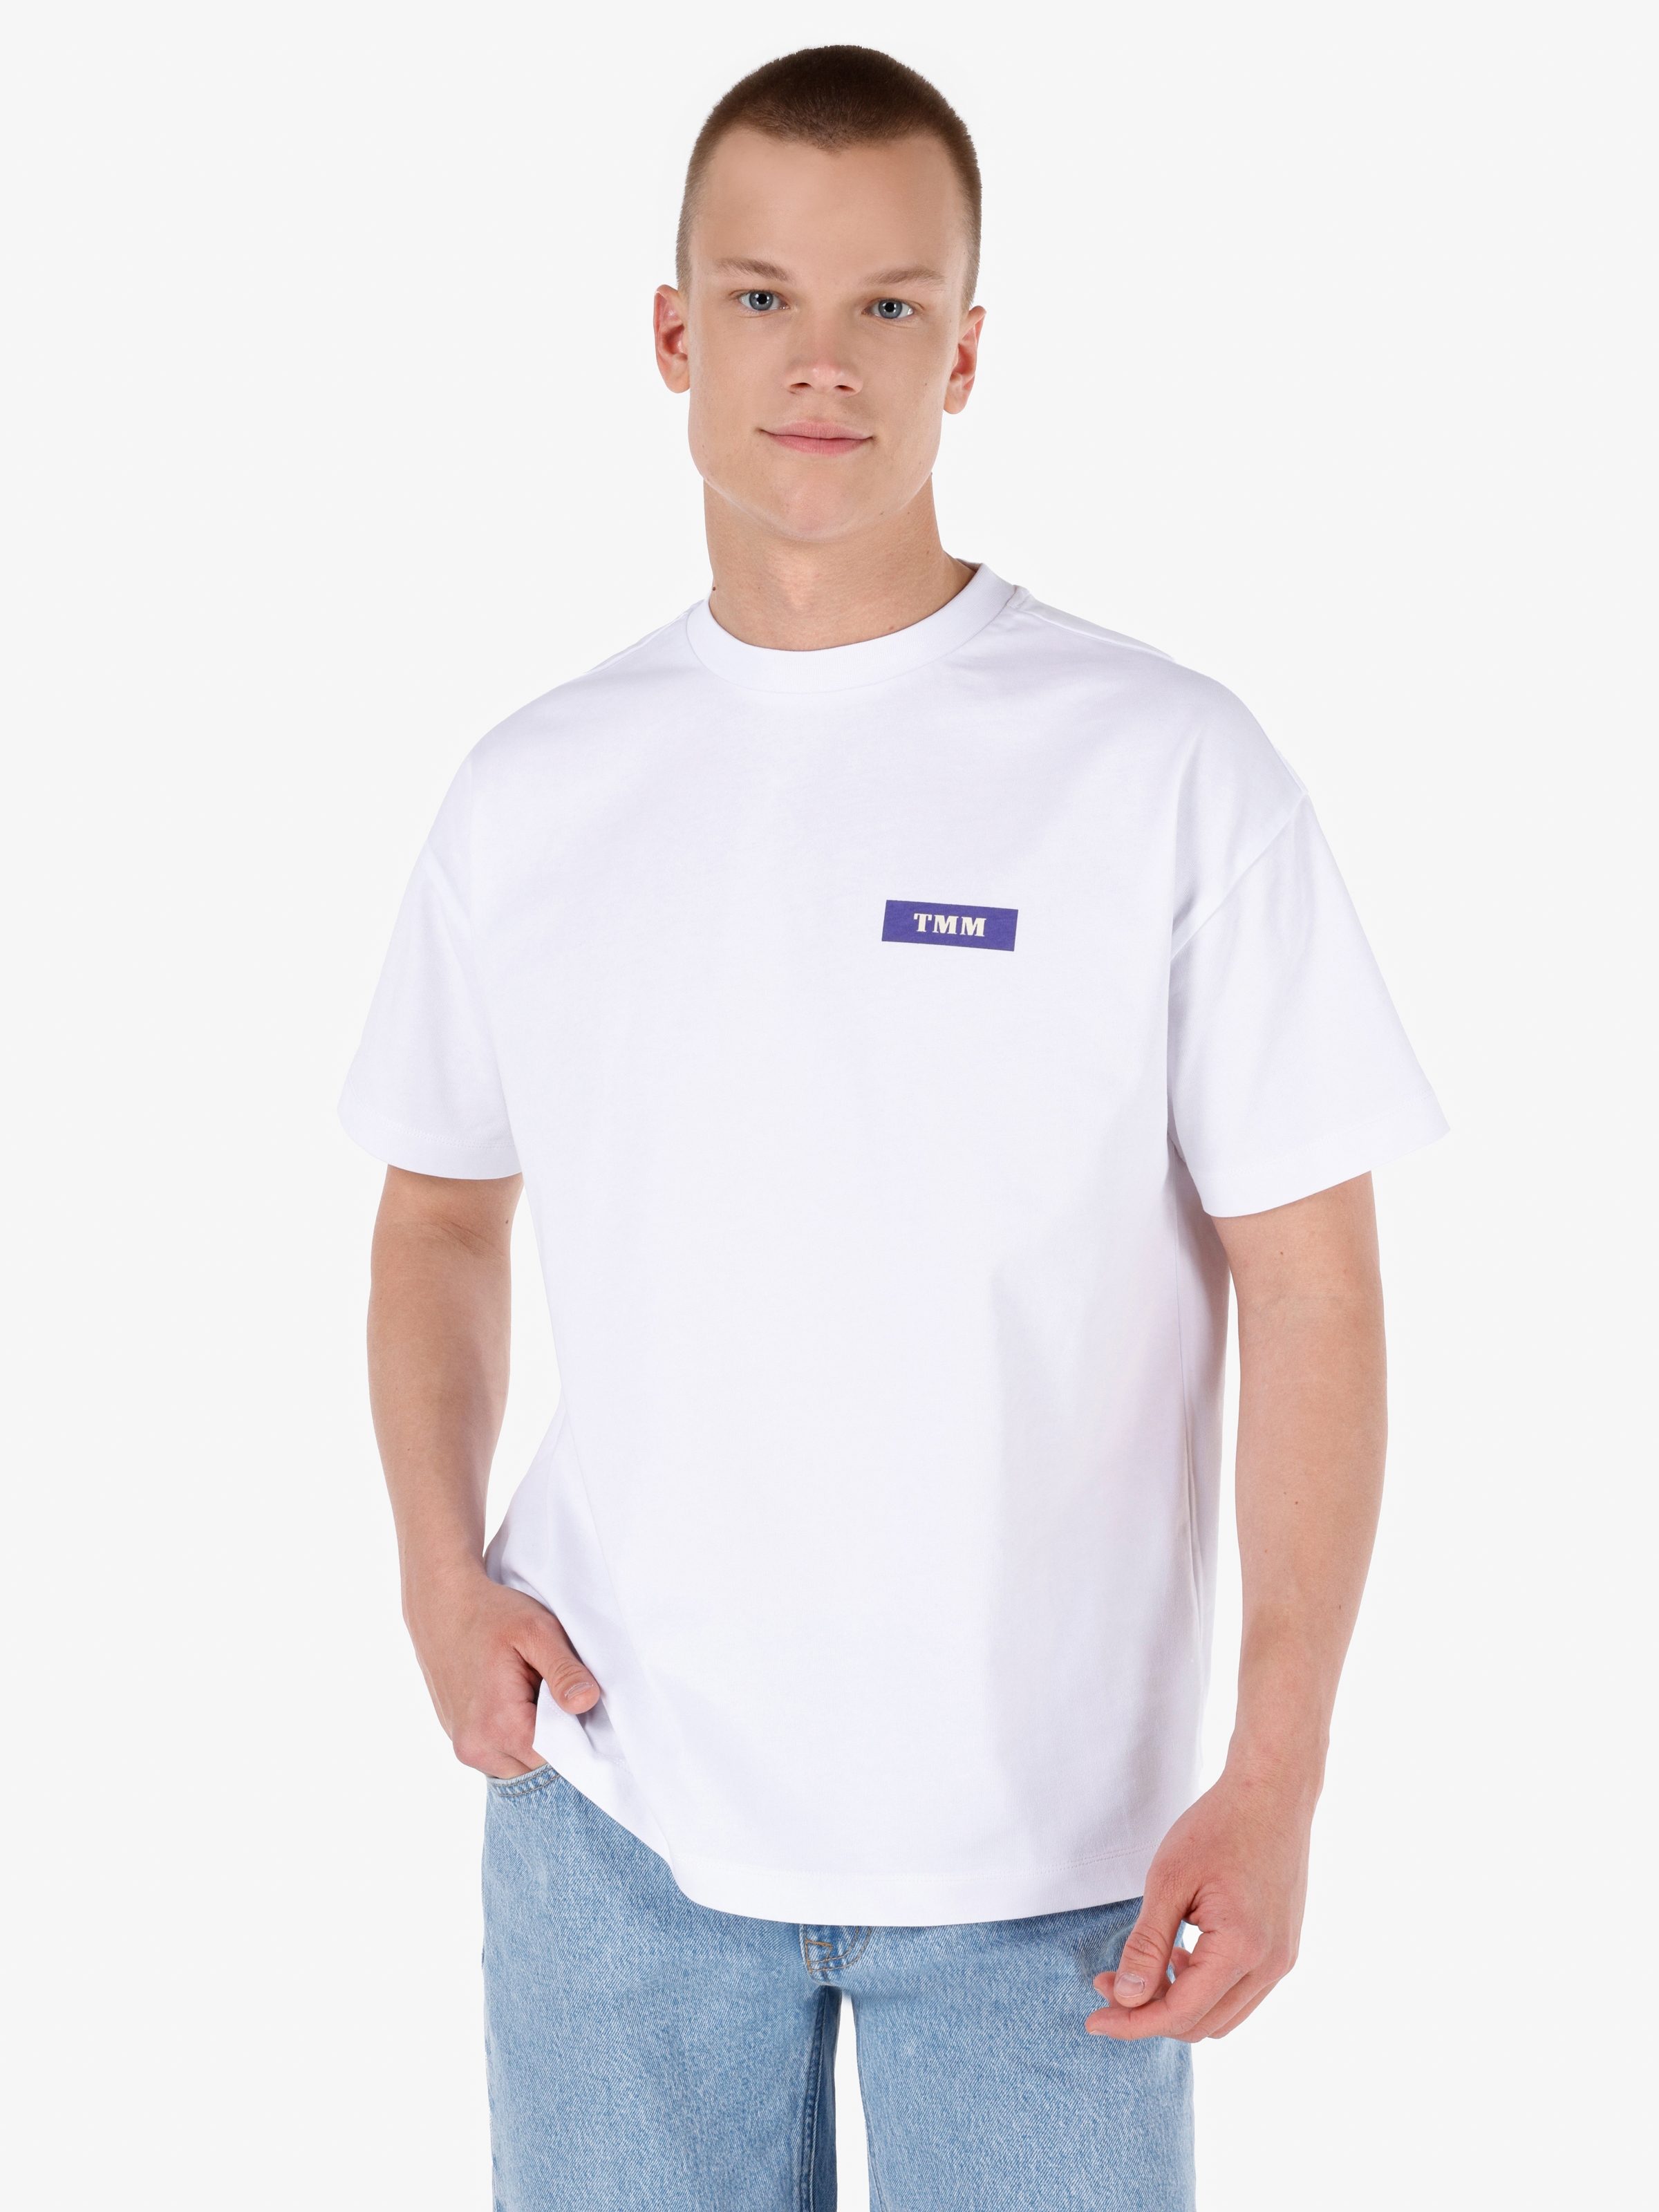 Unısex Beyaz Lilseb Sloganlı Tişört